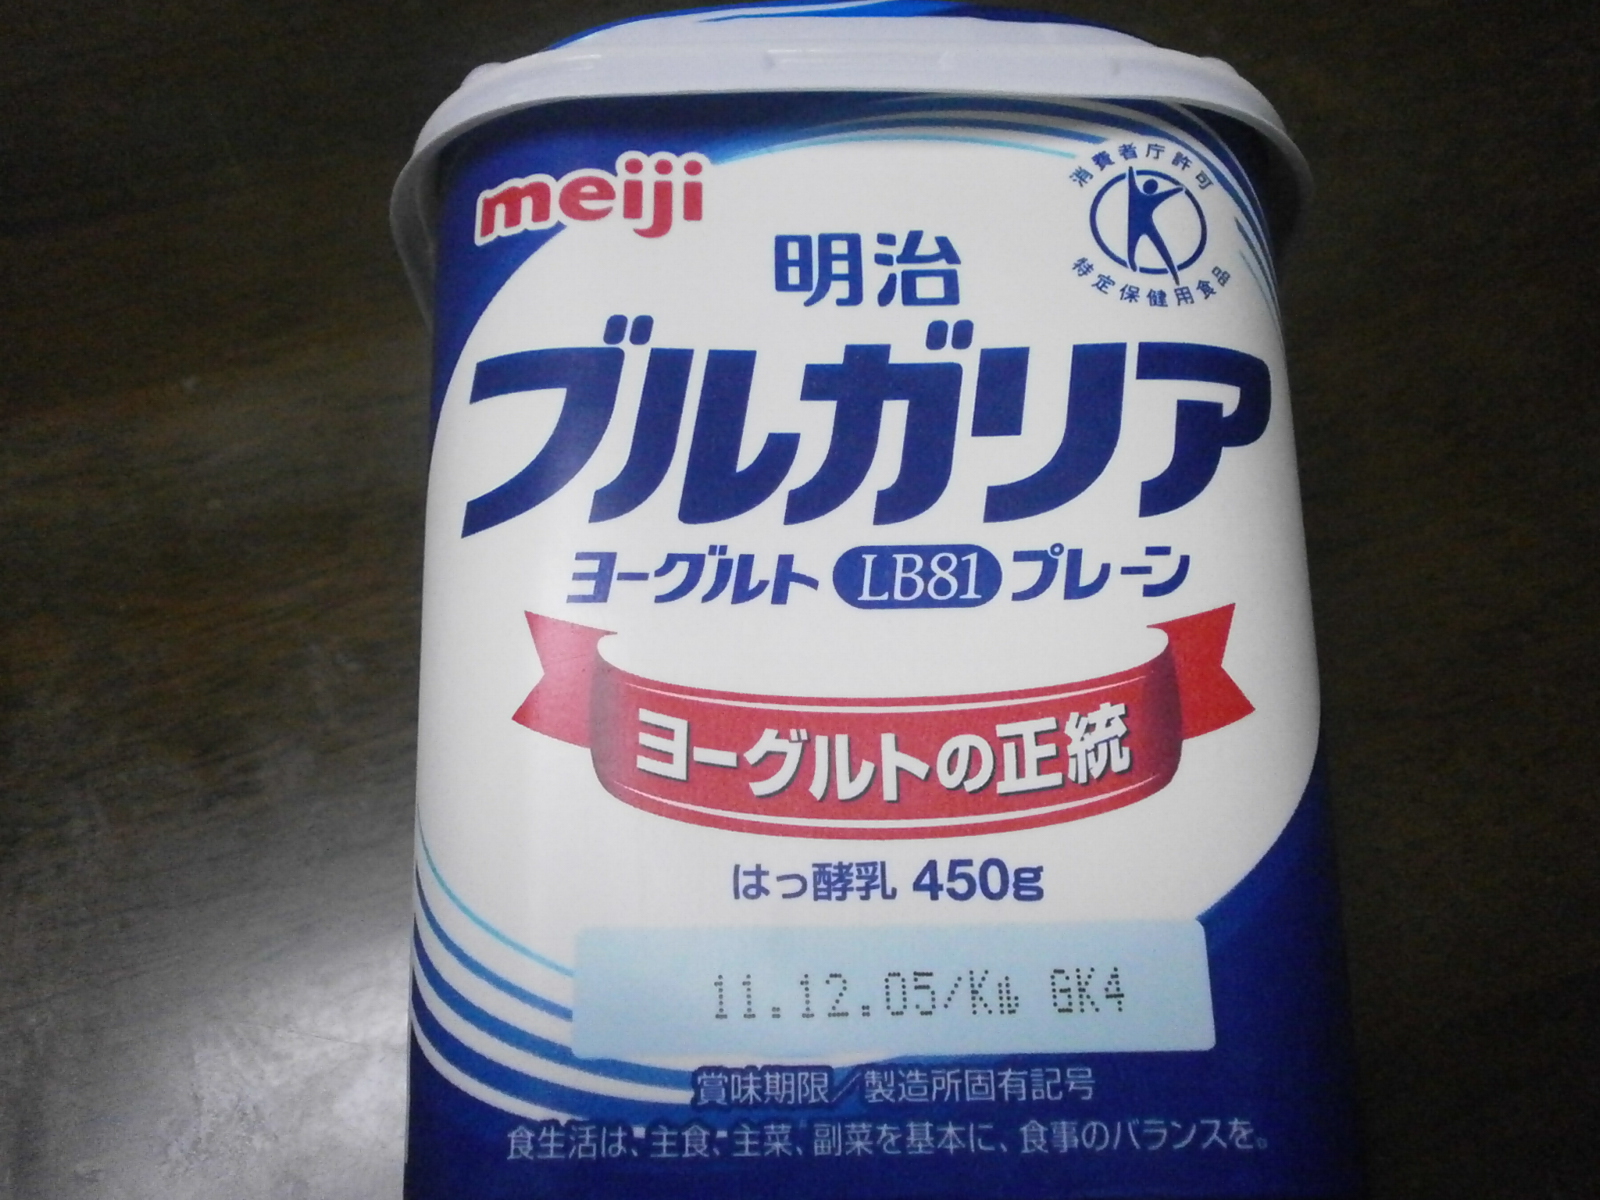 Yogurt bulgaro (Meiji)